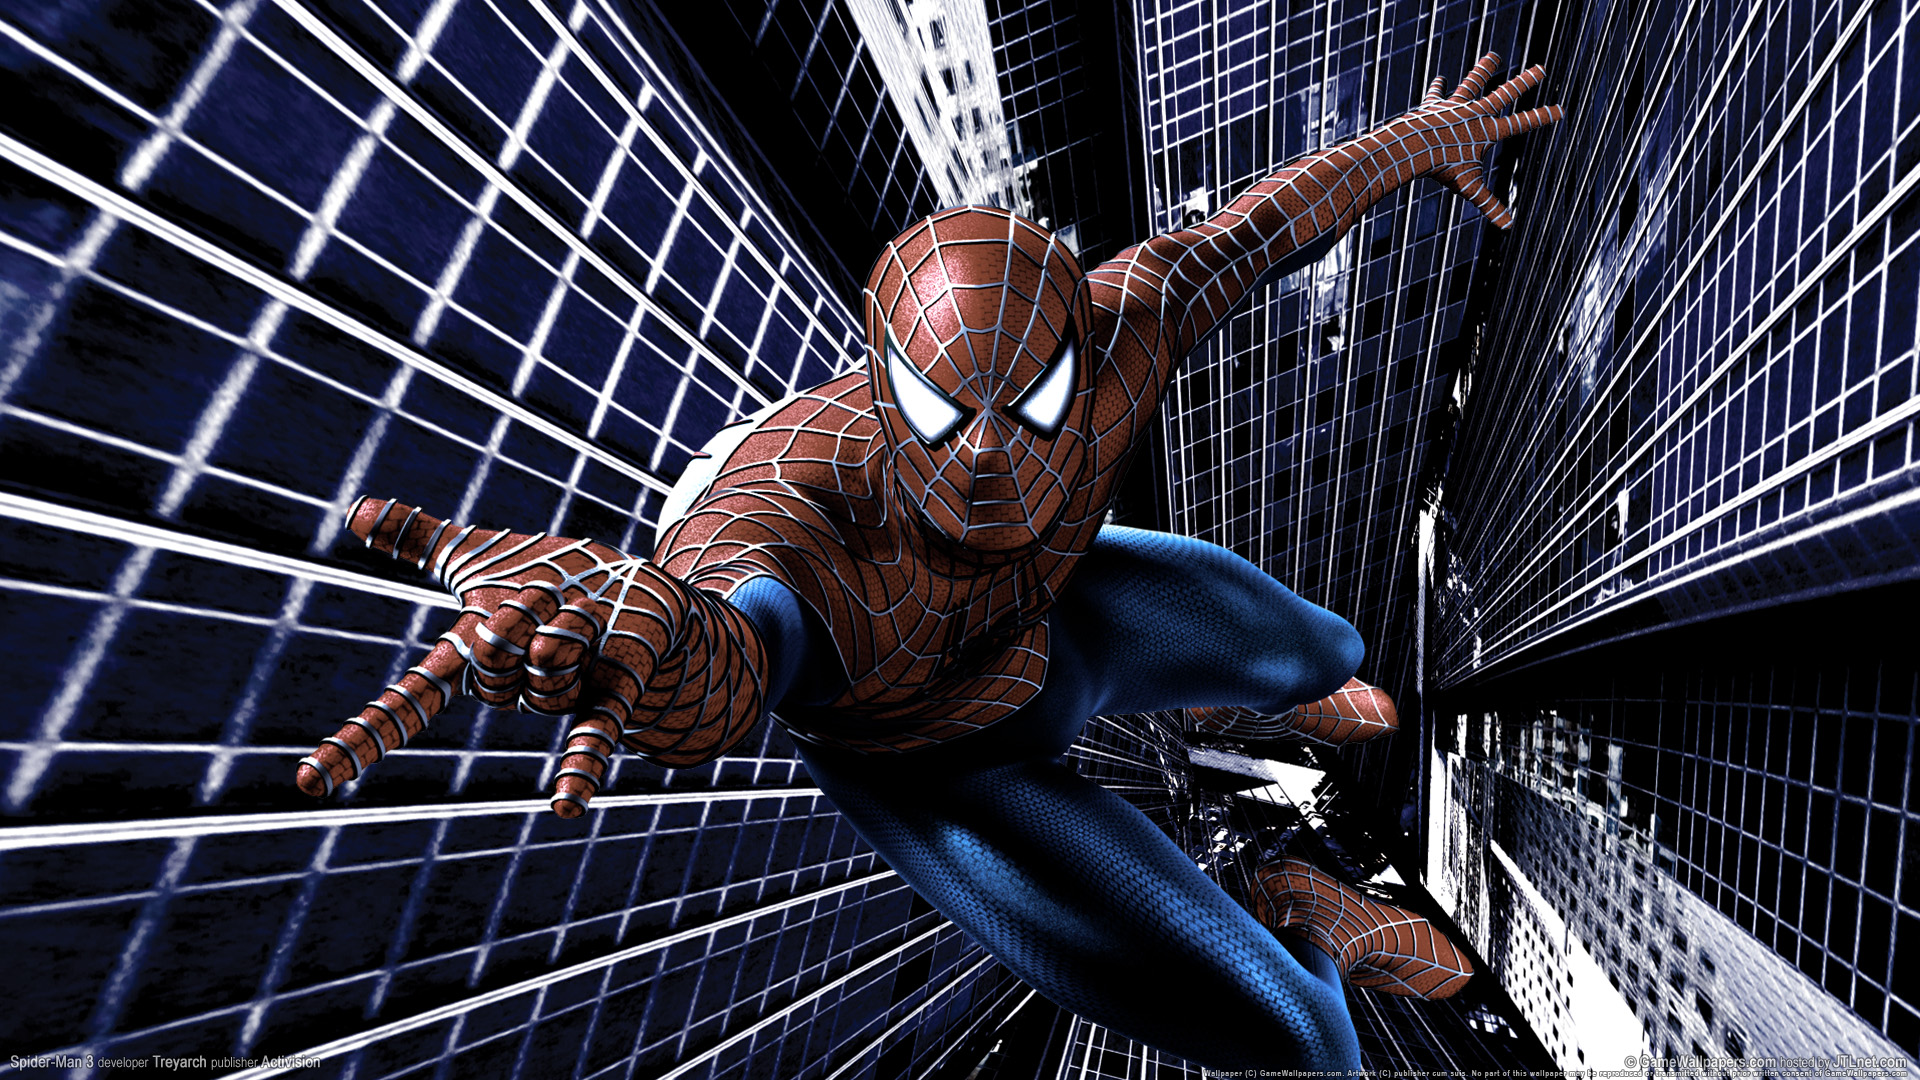 Spiderman Wallpaper 1080p - WallpaperSafari